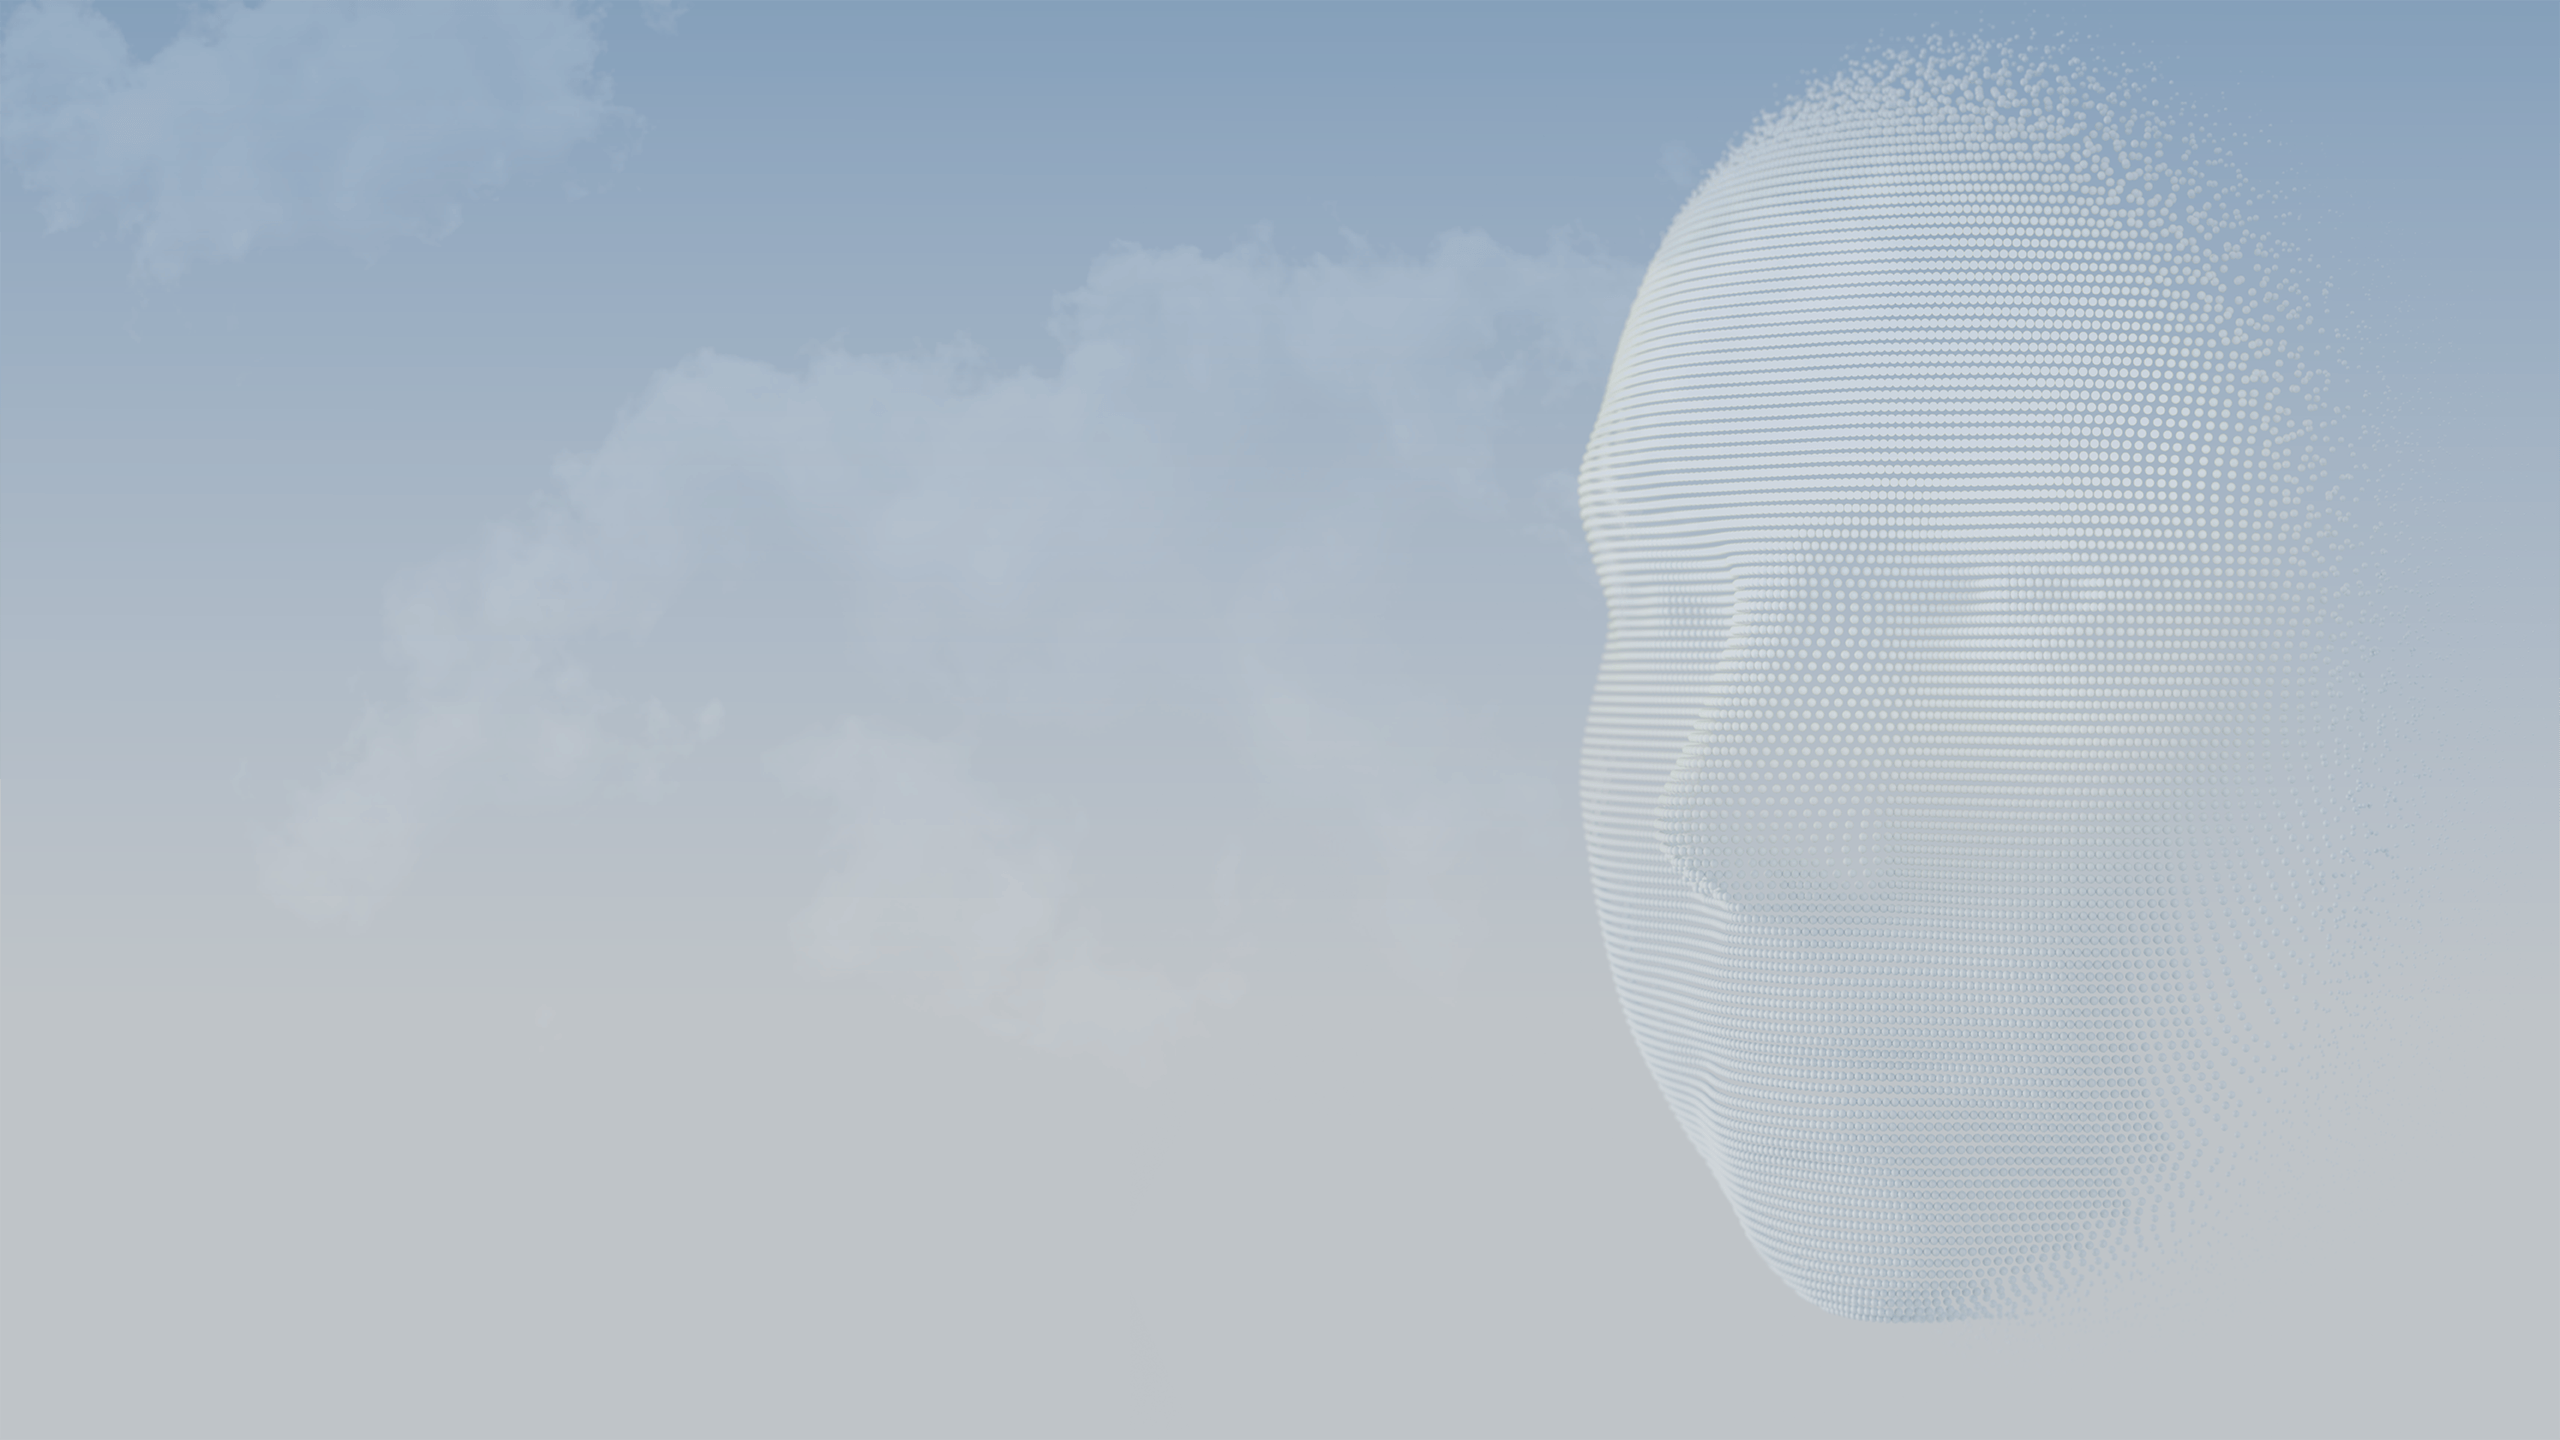 3D სფეროები ქმნიან ადამიანის სახეს ლურჯი ცის ფონზე.